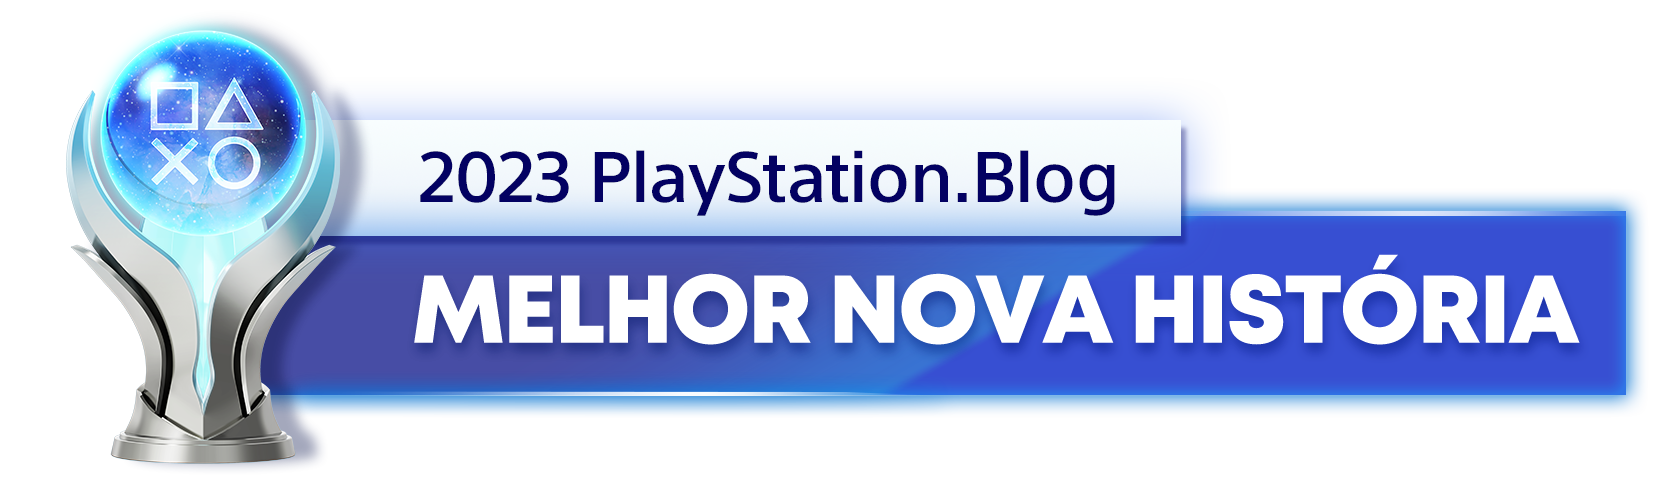  "Troféu de Platina para o vencedor da categoria Melhor Nova História de 2023 do Blog PlayStation"